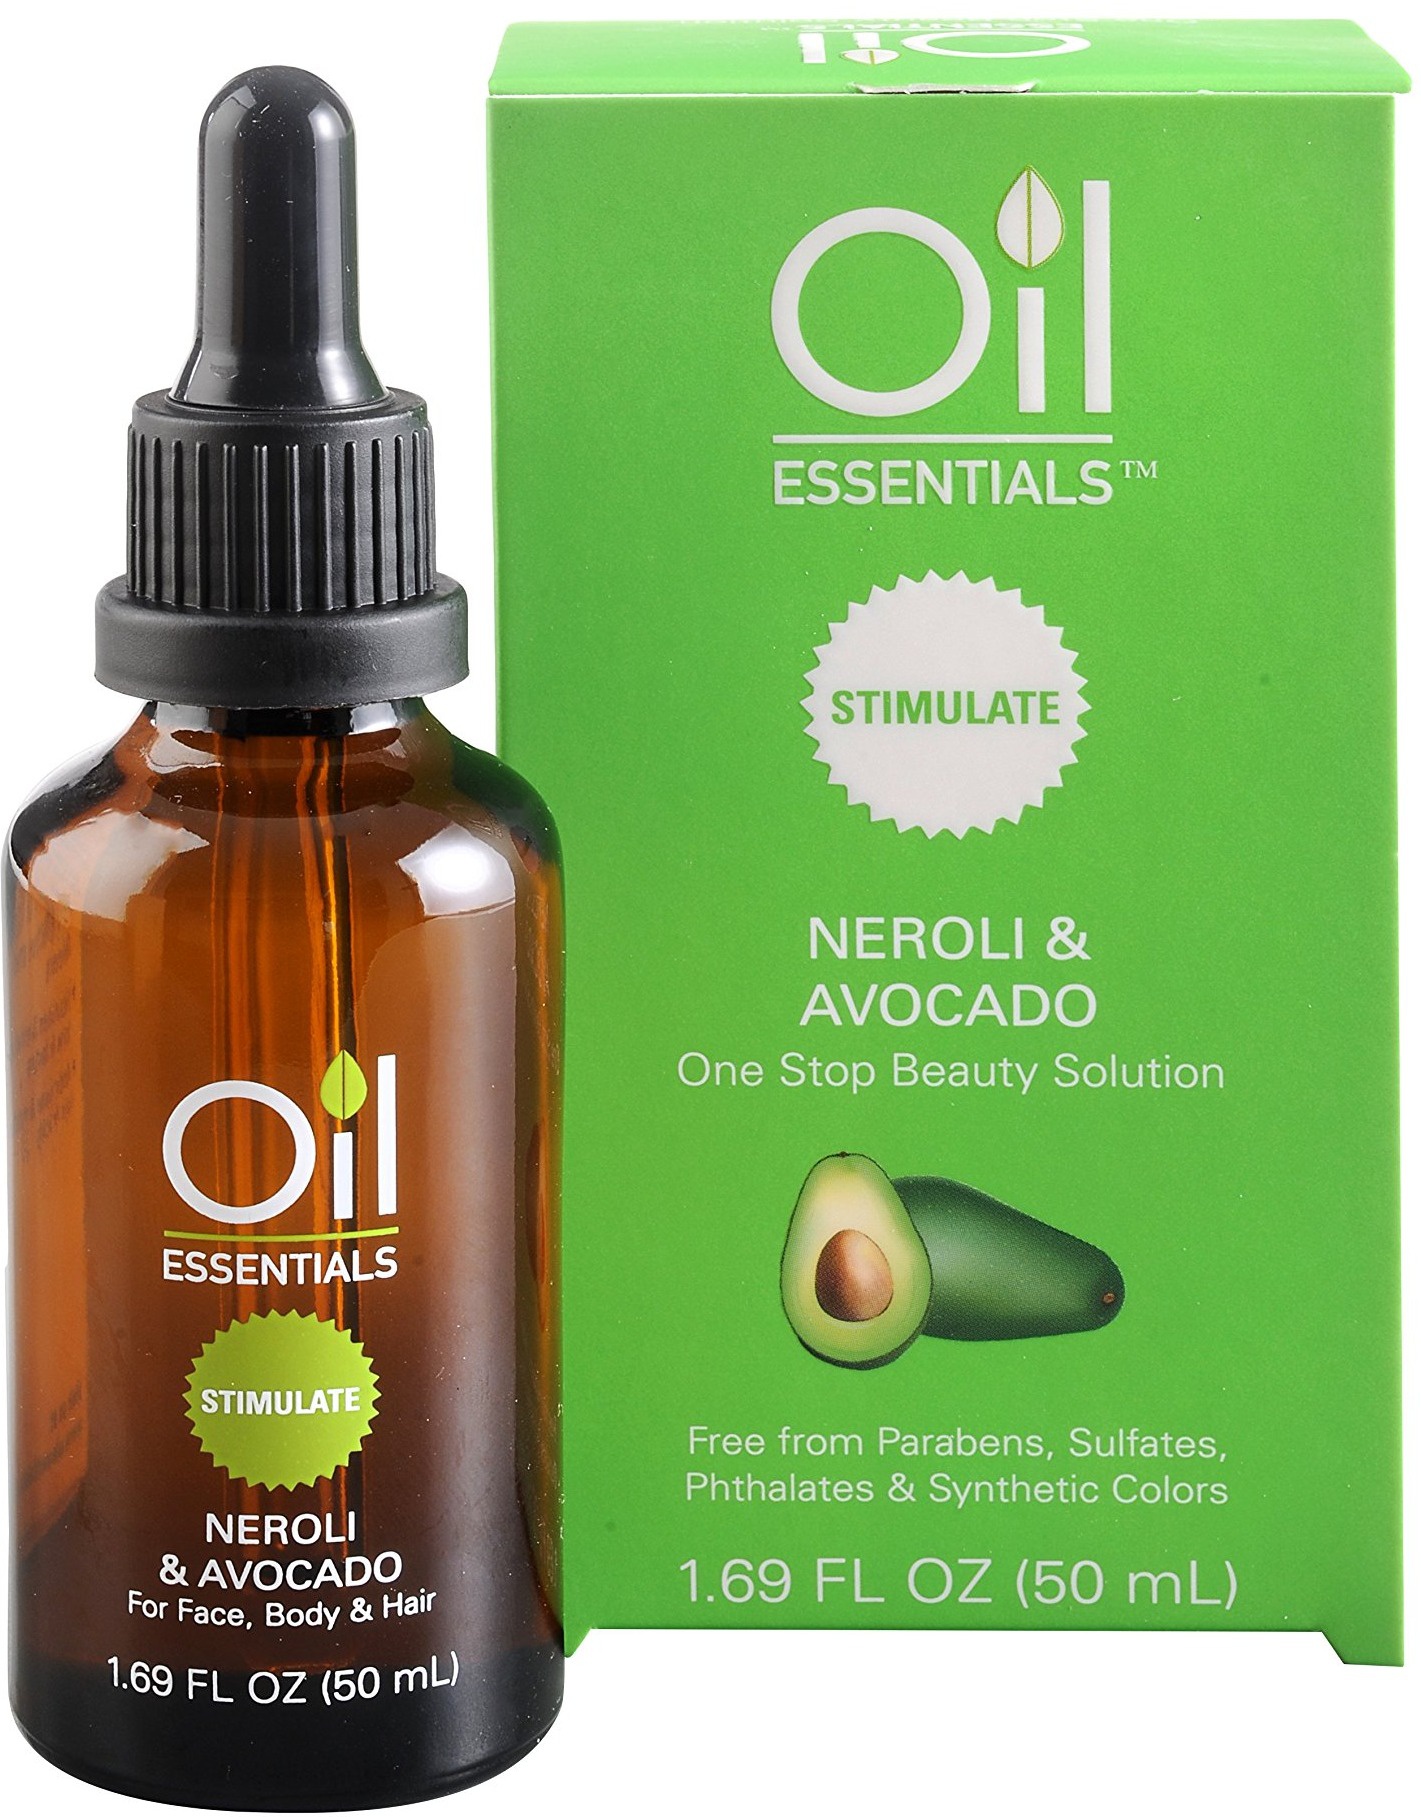 Oil Essentials Neroli & Avocado Oil